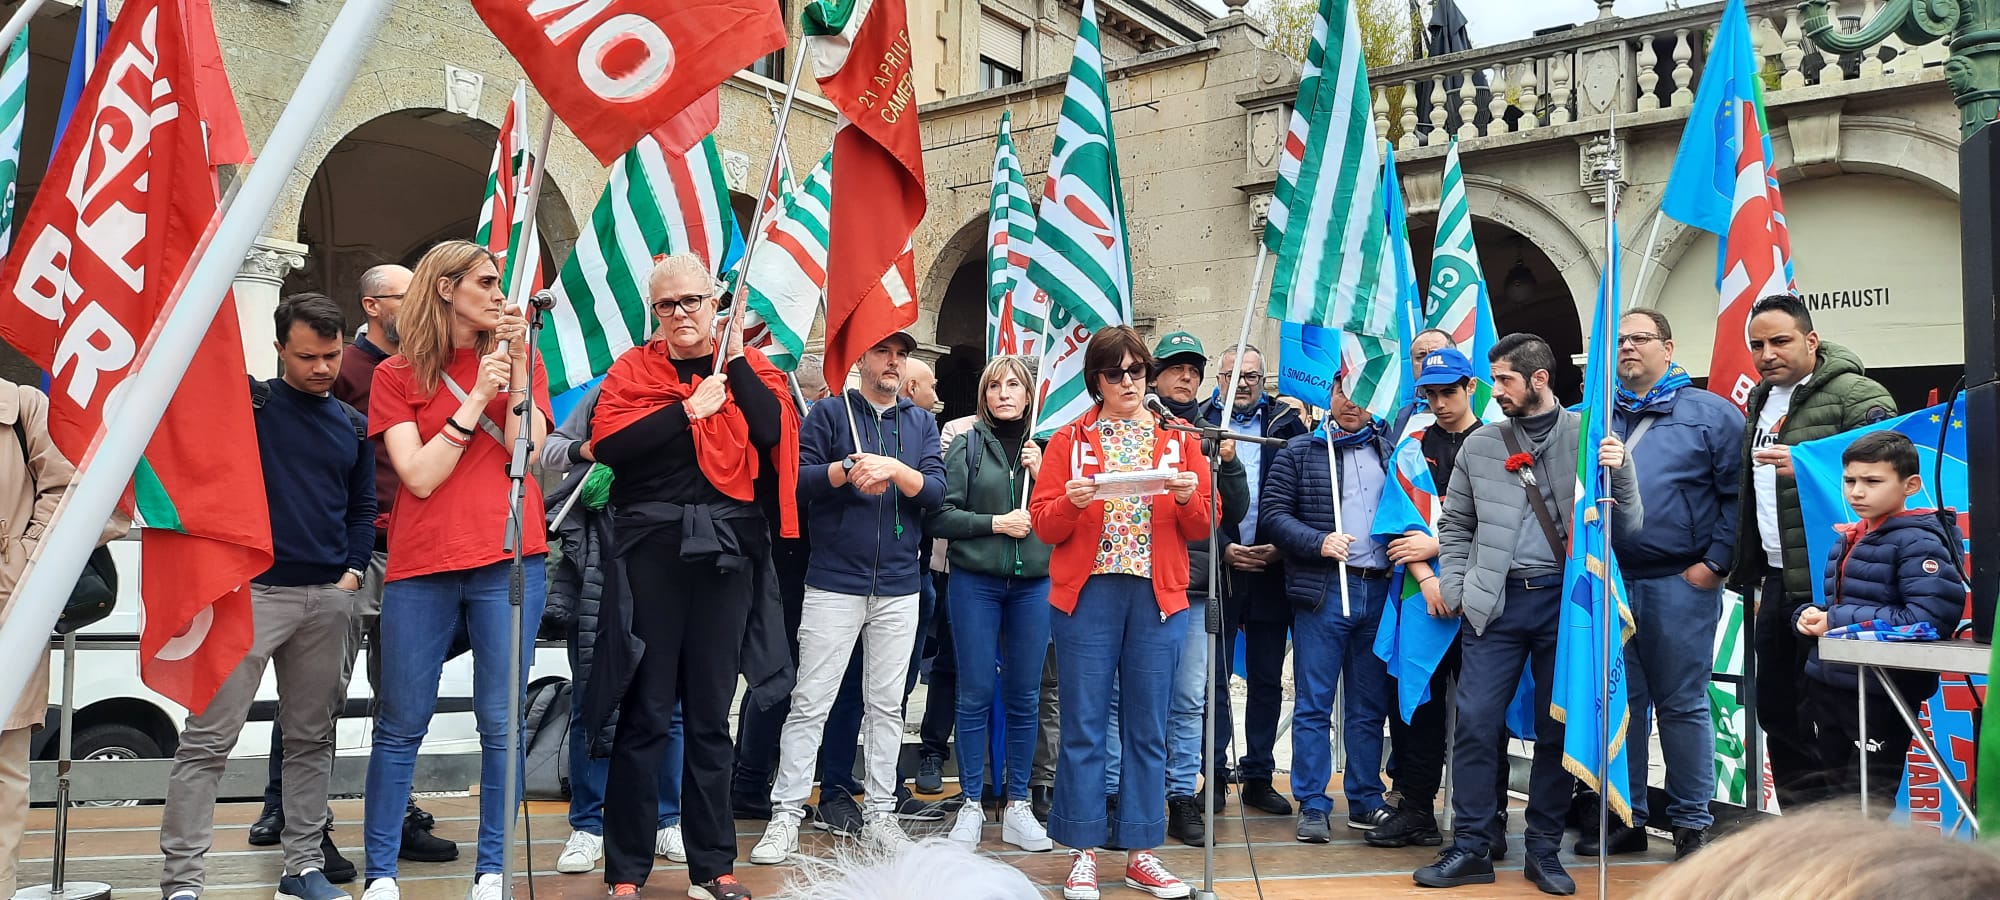 1° maggio manifestazione Bergamo